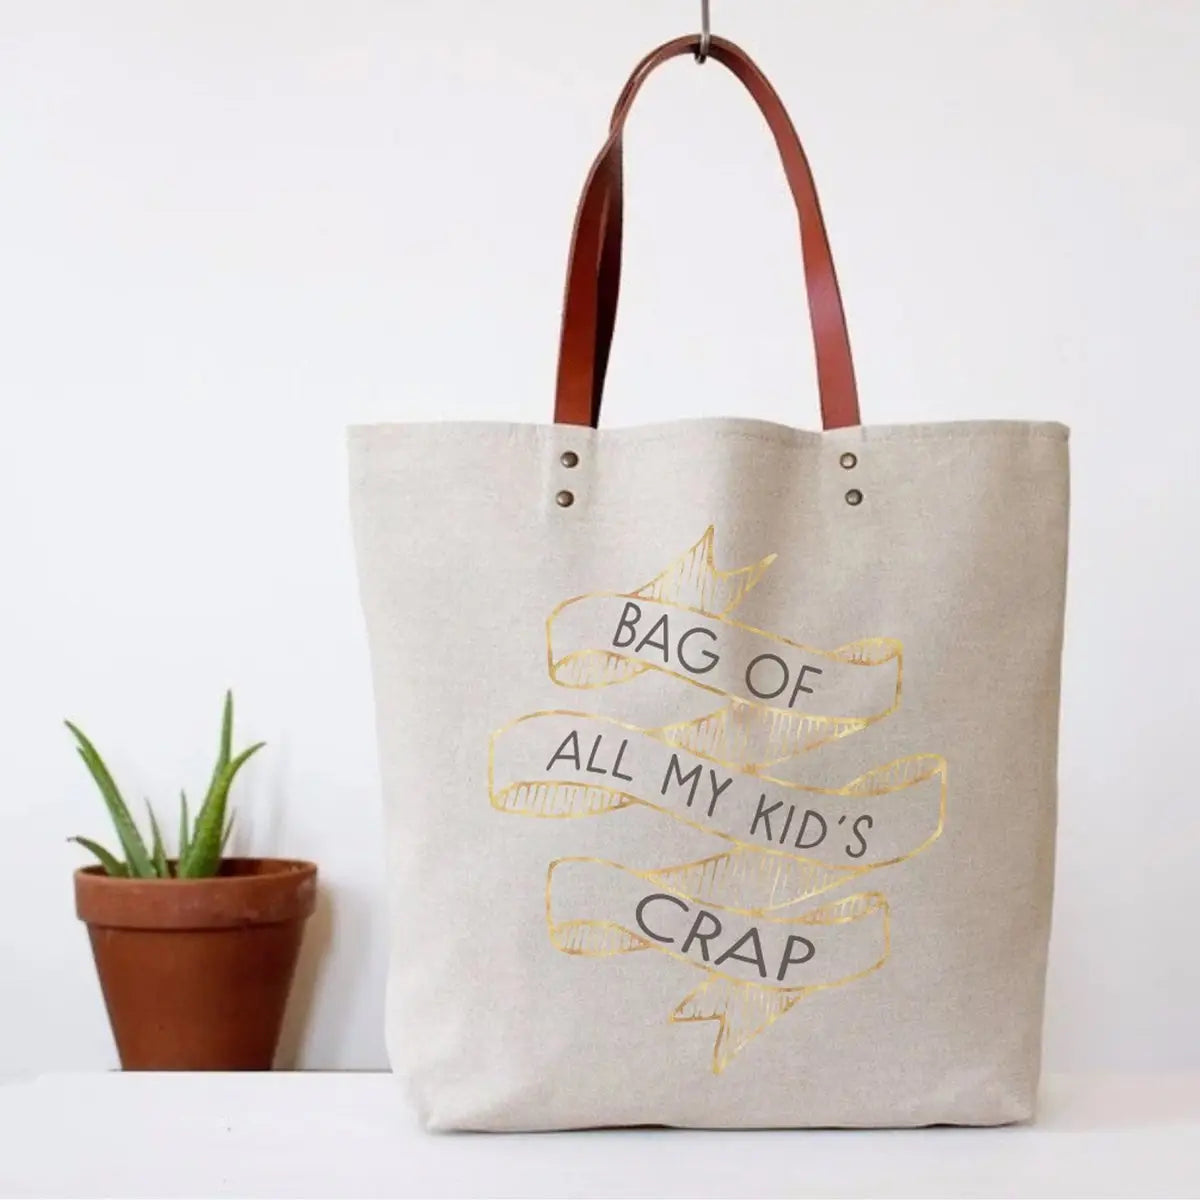 All My Kid’s Crap Tote Bag